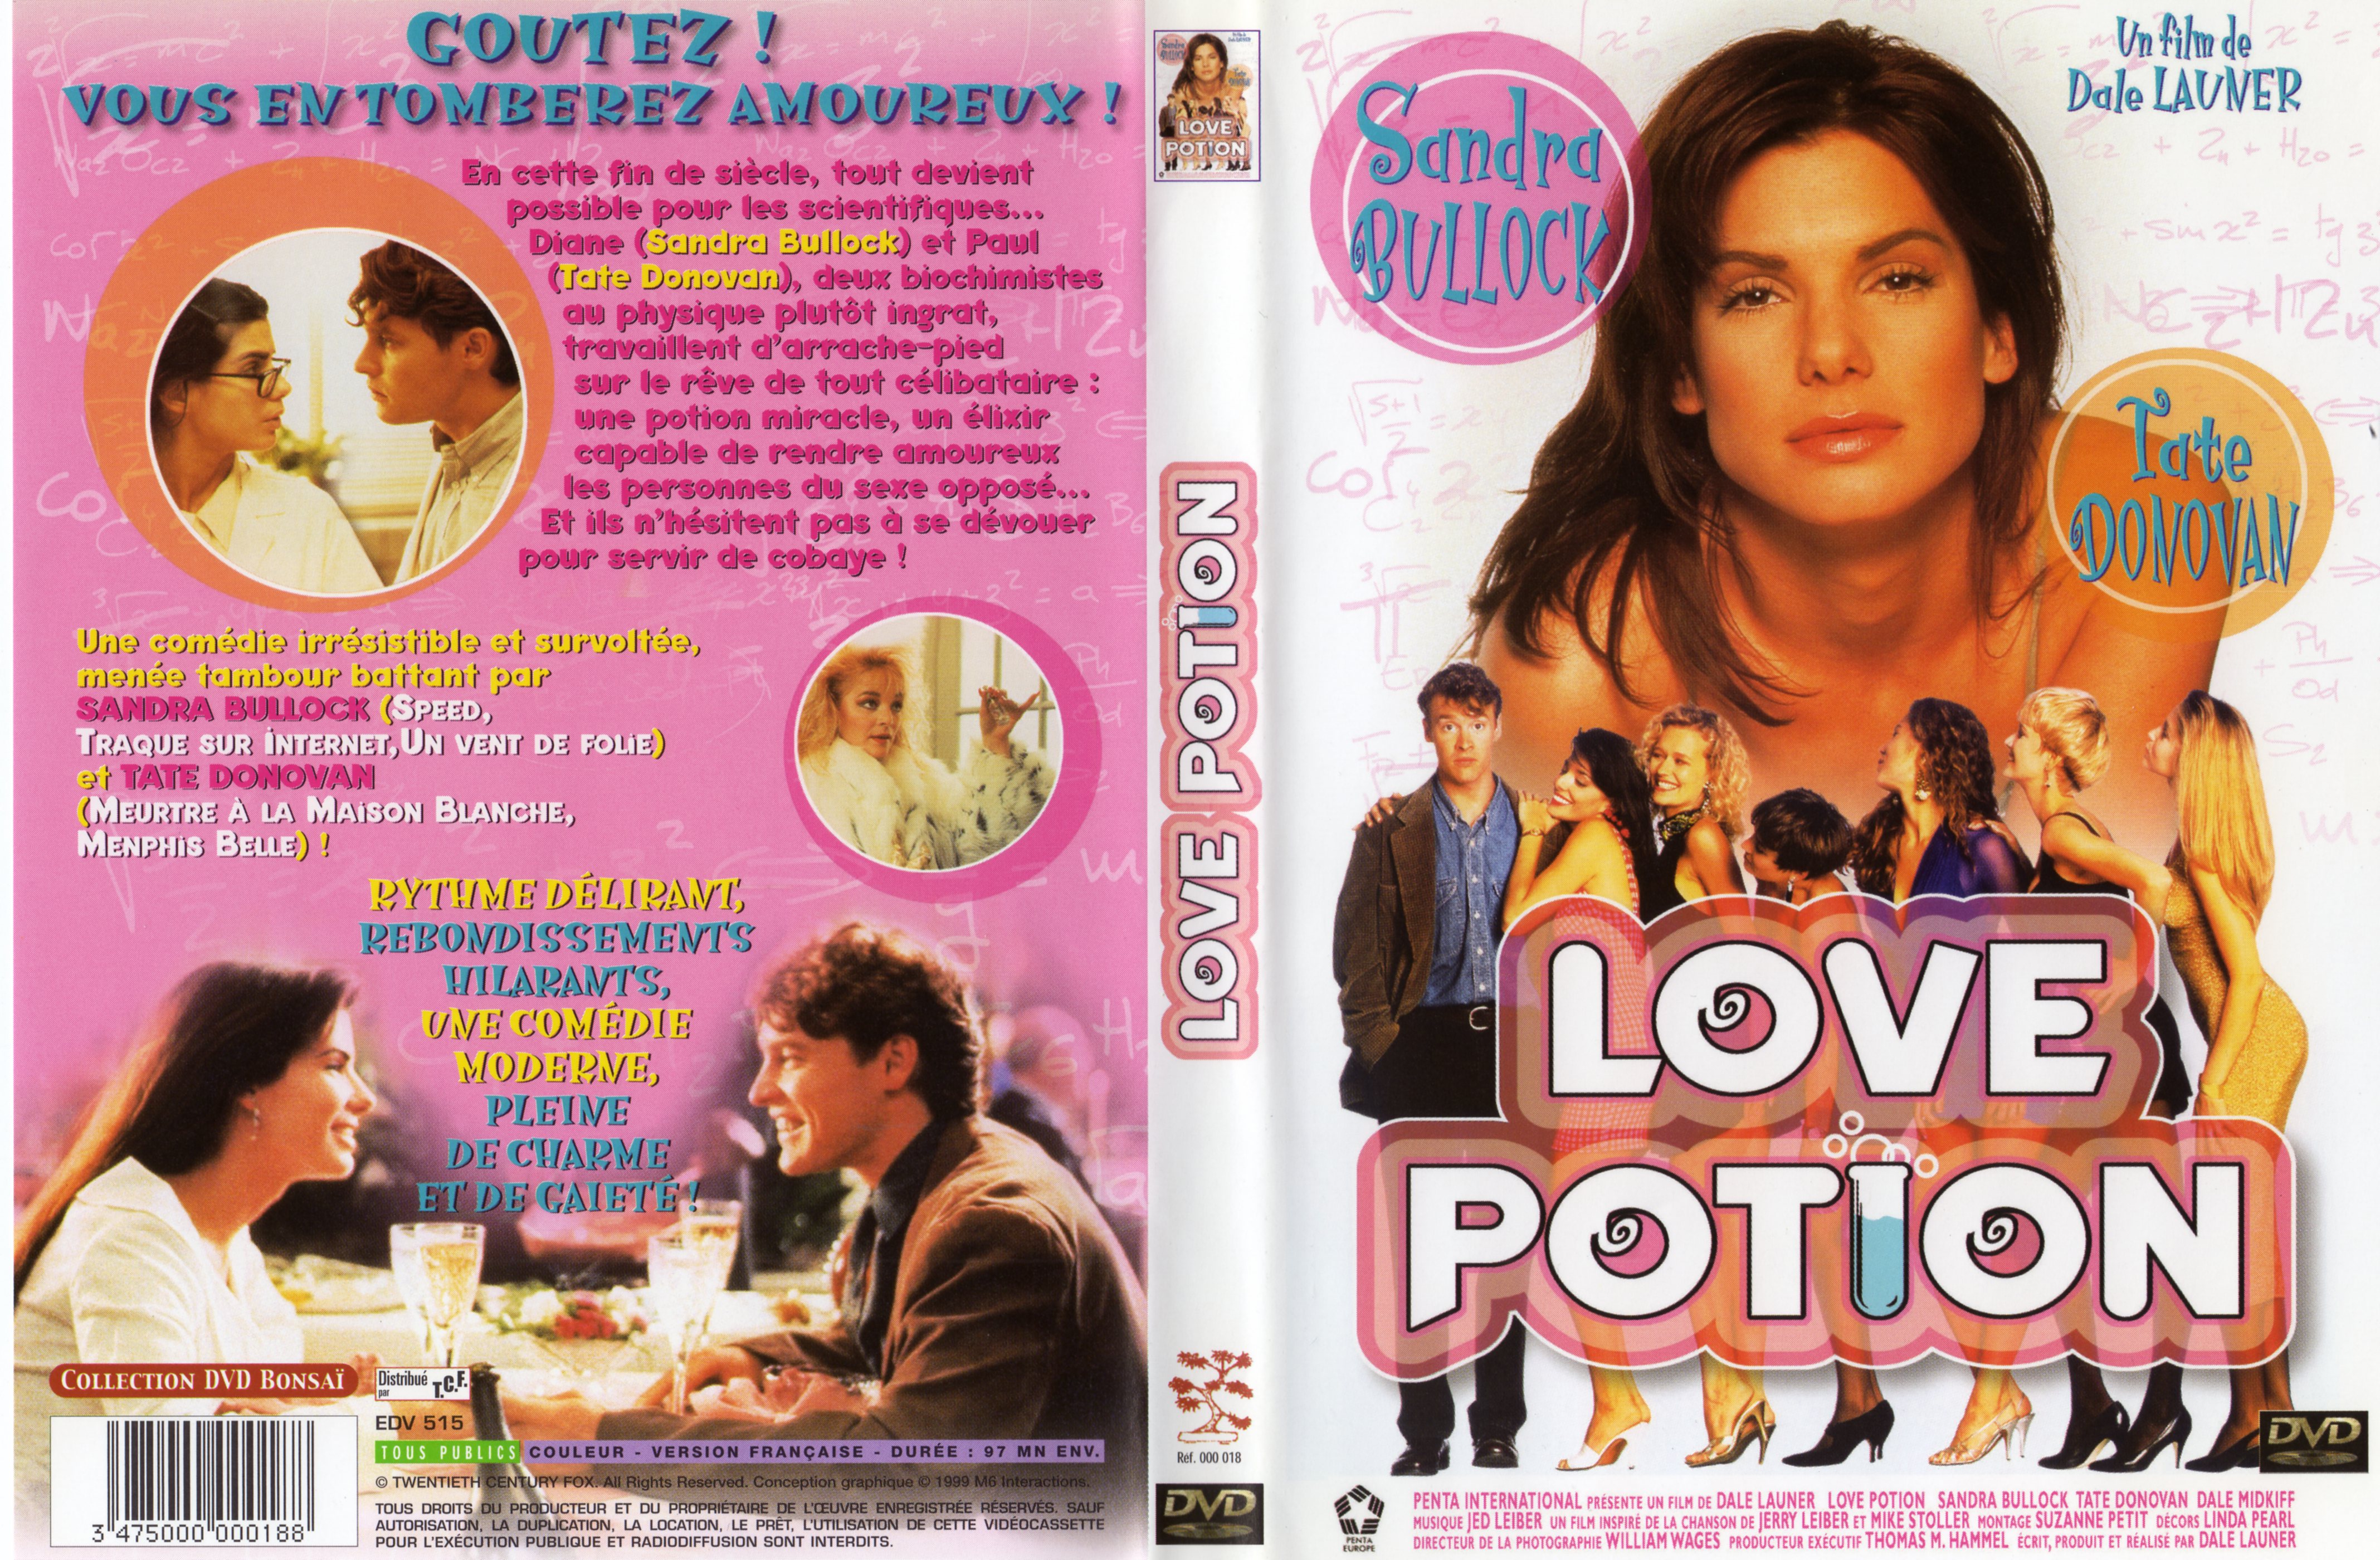 Jaquette DVD Love potion